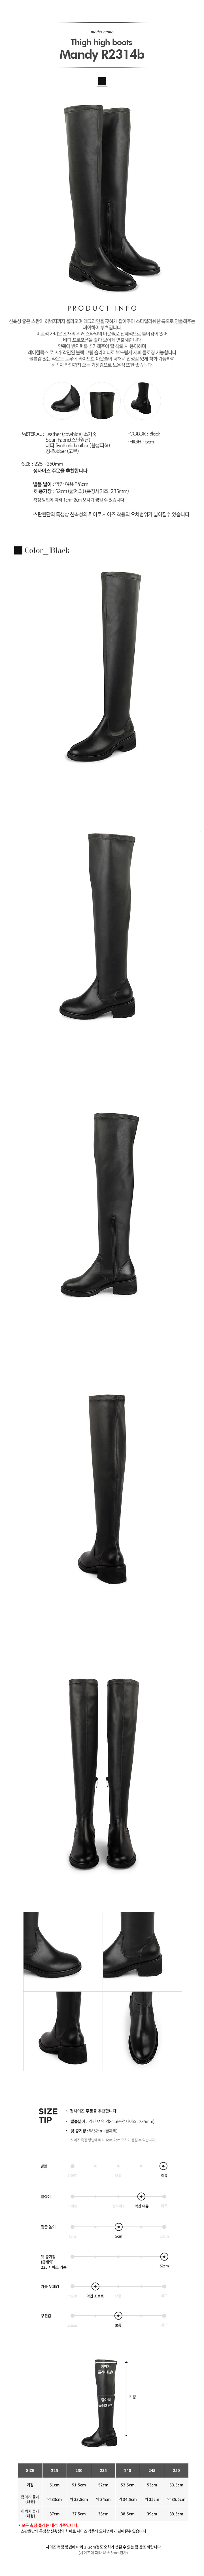 레이첼콕스(RACHEL COX) Thigh high boots_Mandy R2314b_5cm